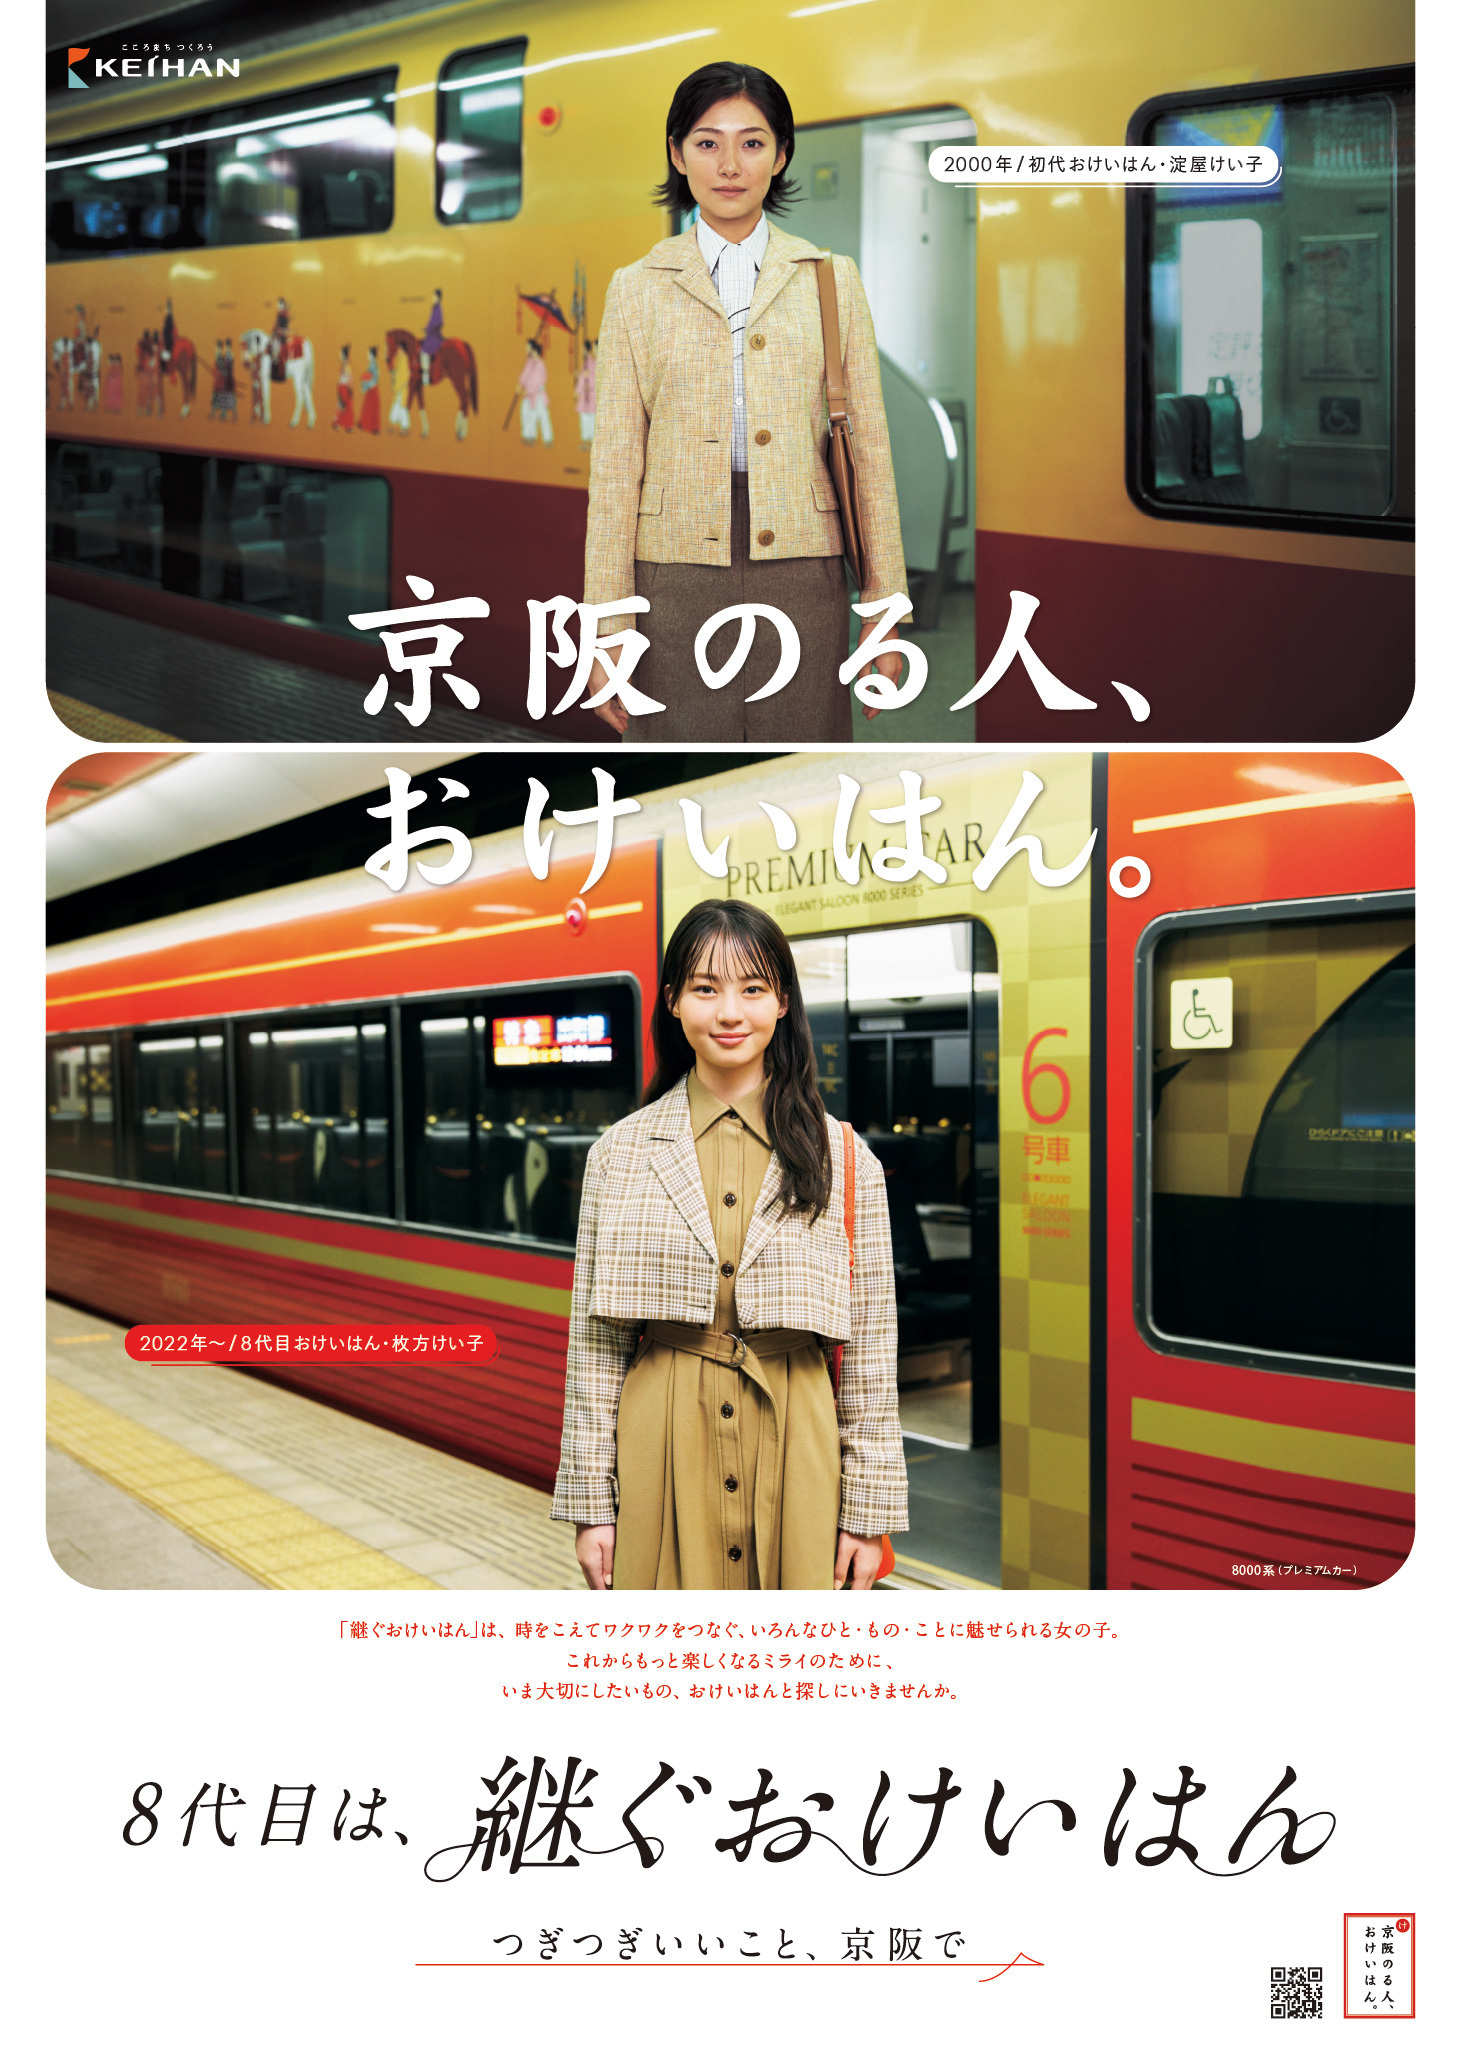 【京阪ホールディングス】三浦理奈さんをイメジーキャラクターに起用　8代目「おけいはん」として各種キャンペーン活動を開始